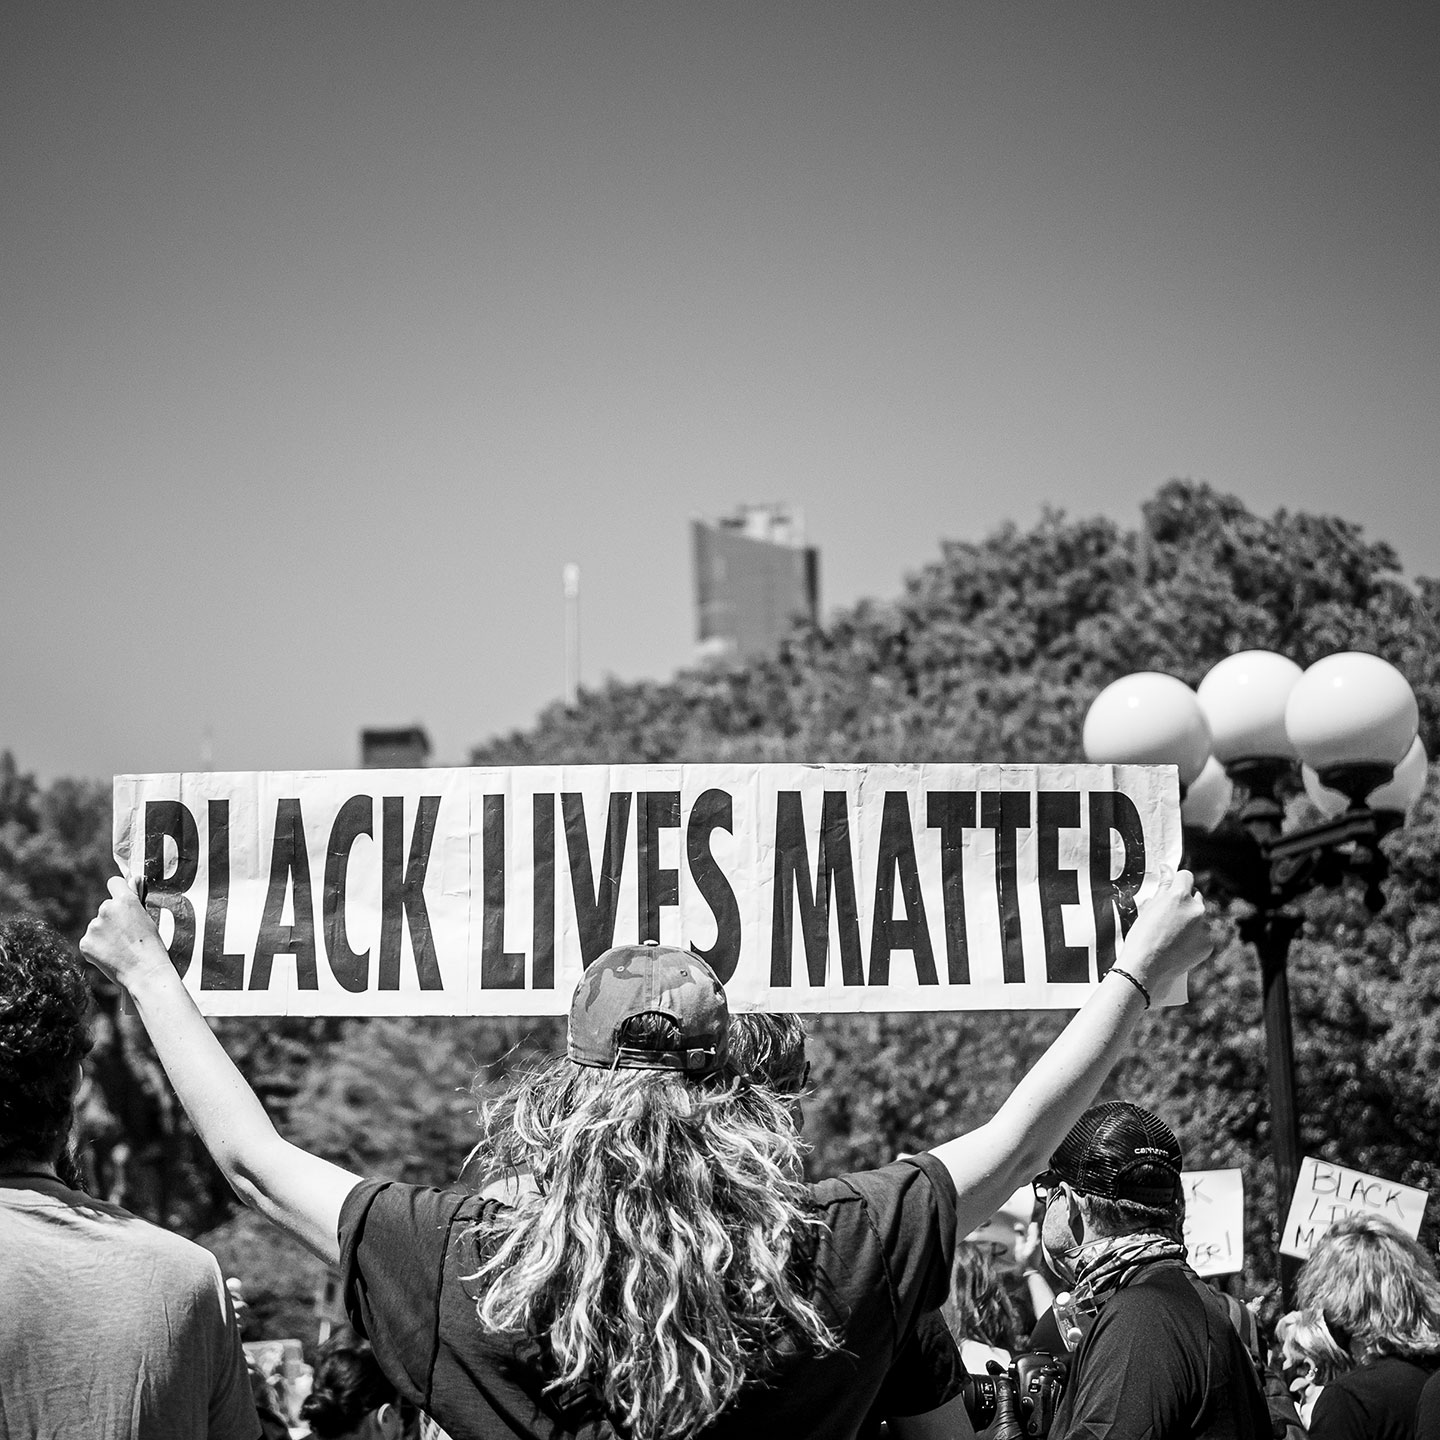 Female protestor holding up Black Lives Matter sign